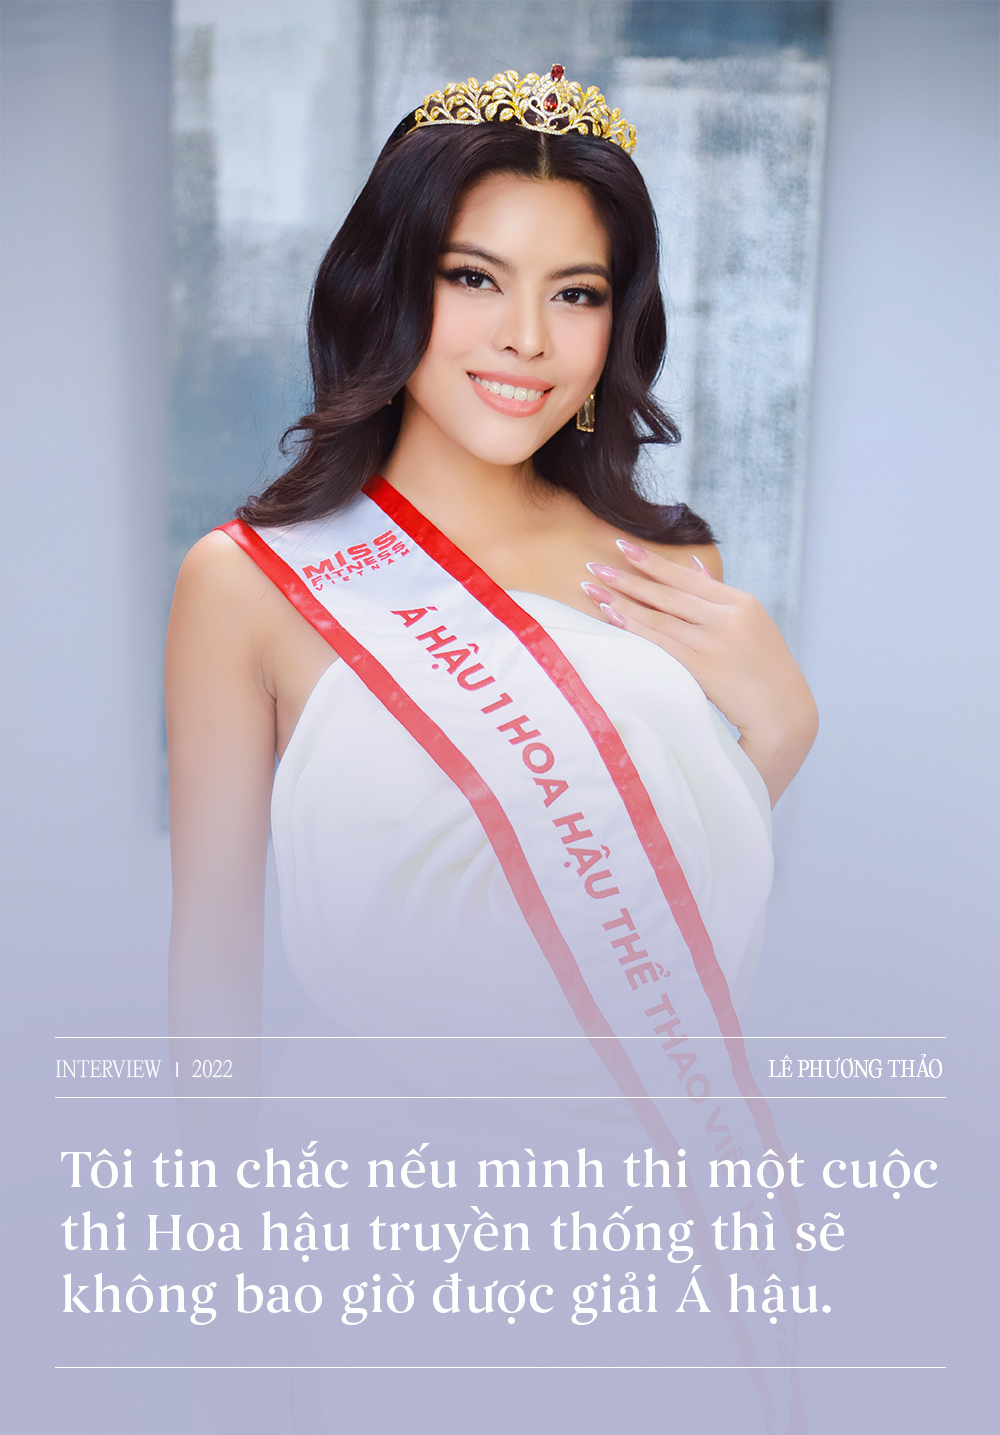 Giao lưu cùng Top 3 Hoa hậu Thể thao Việt Nam: Một lần nói rõ những lùm xùm hậu đăng quang, nhận xét thẳng thắn về Lê Bống  - Ảnh 6.